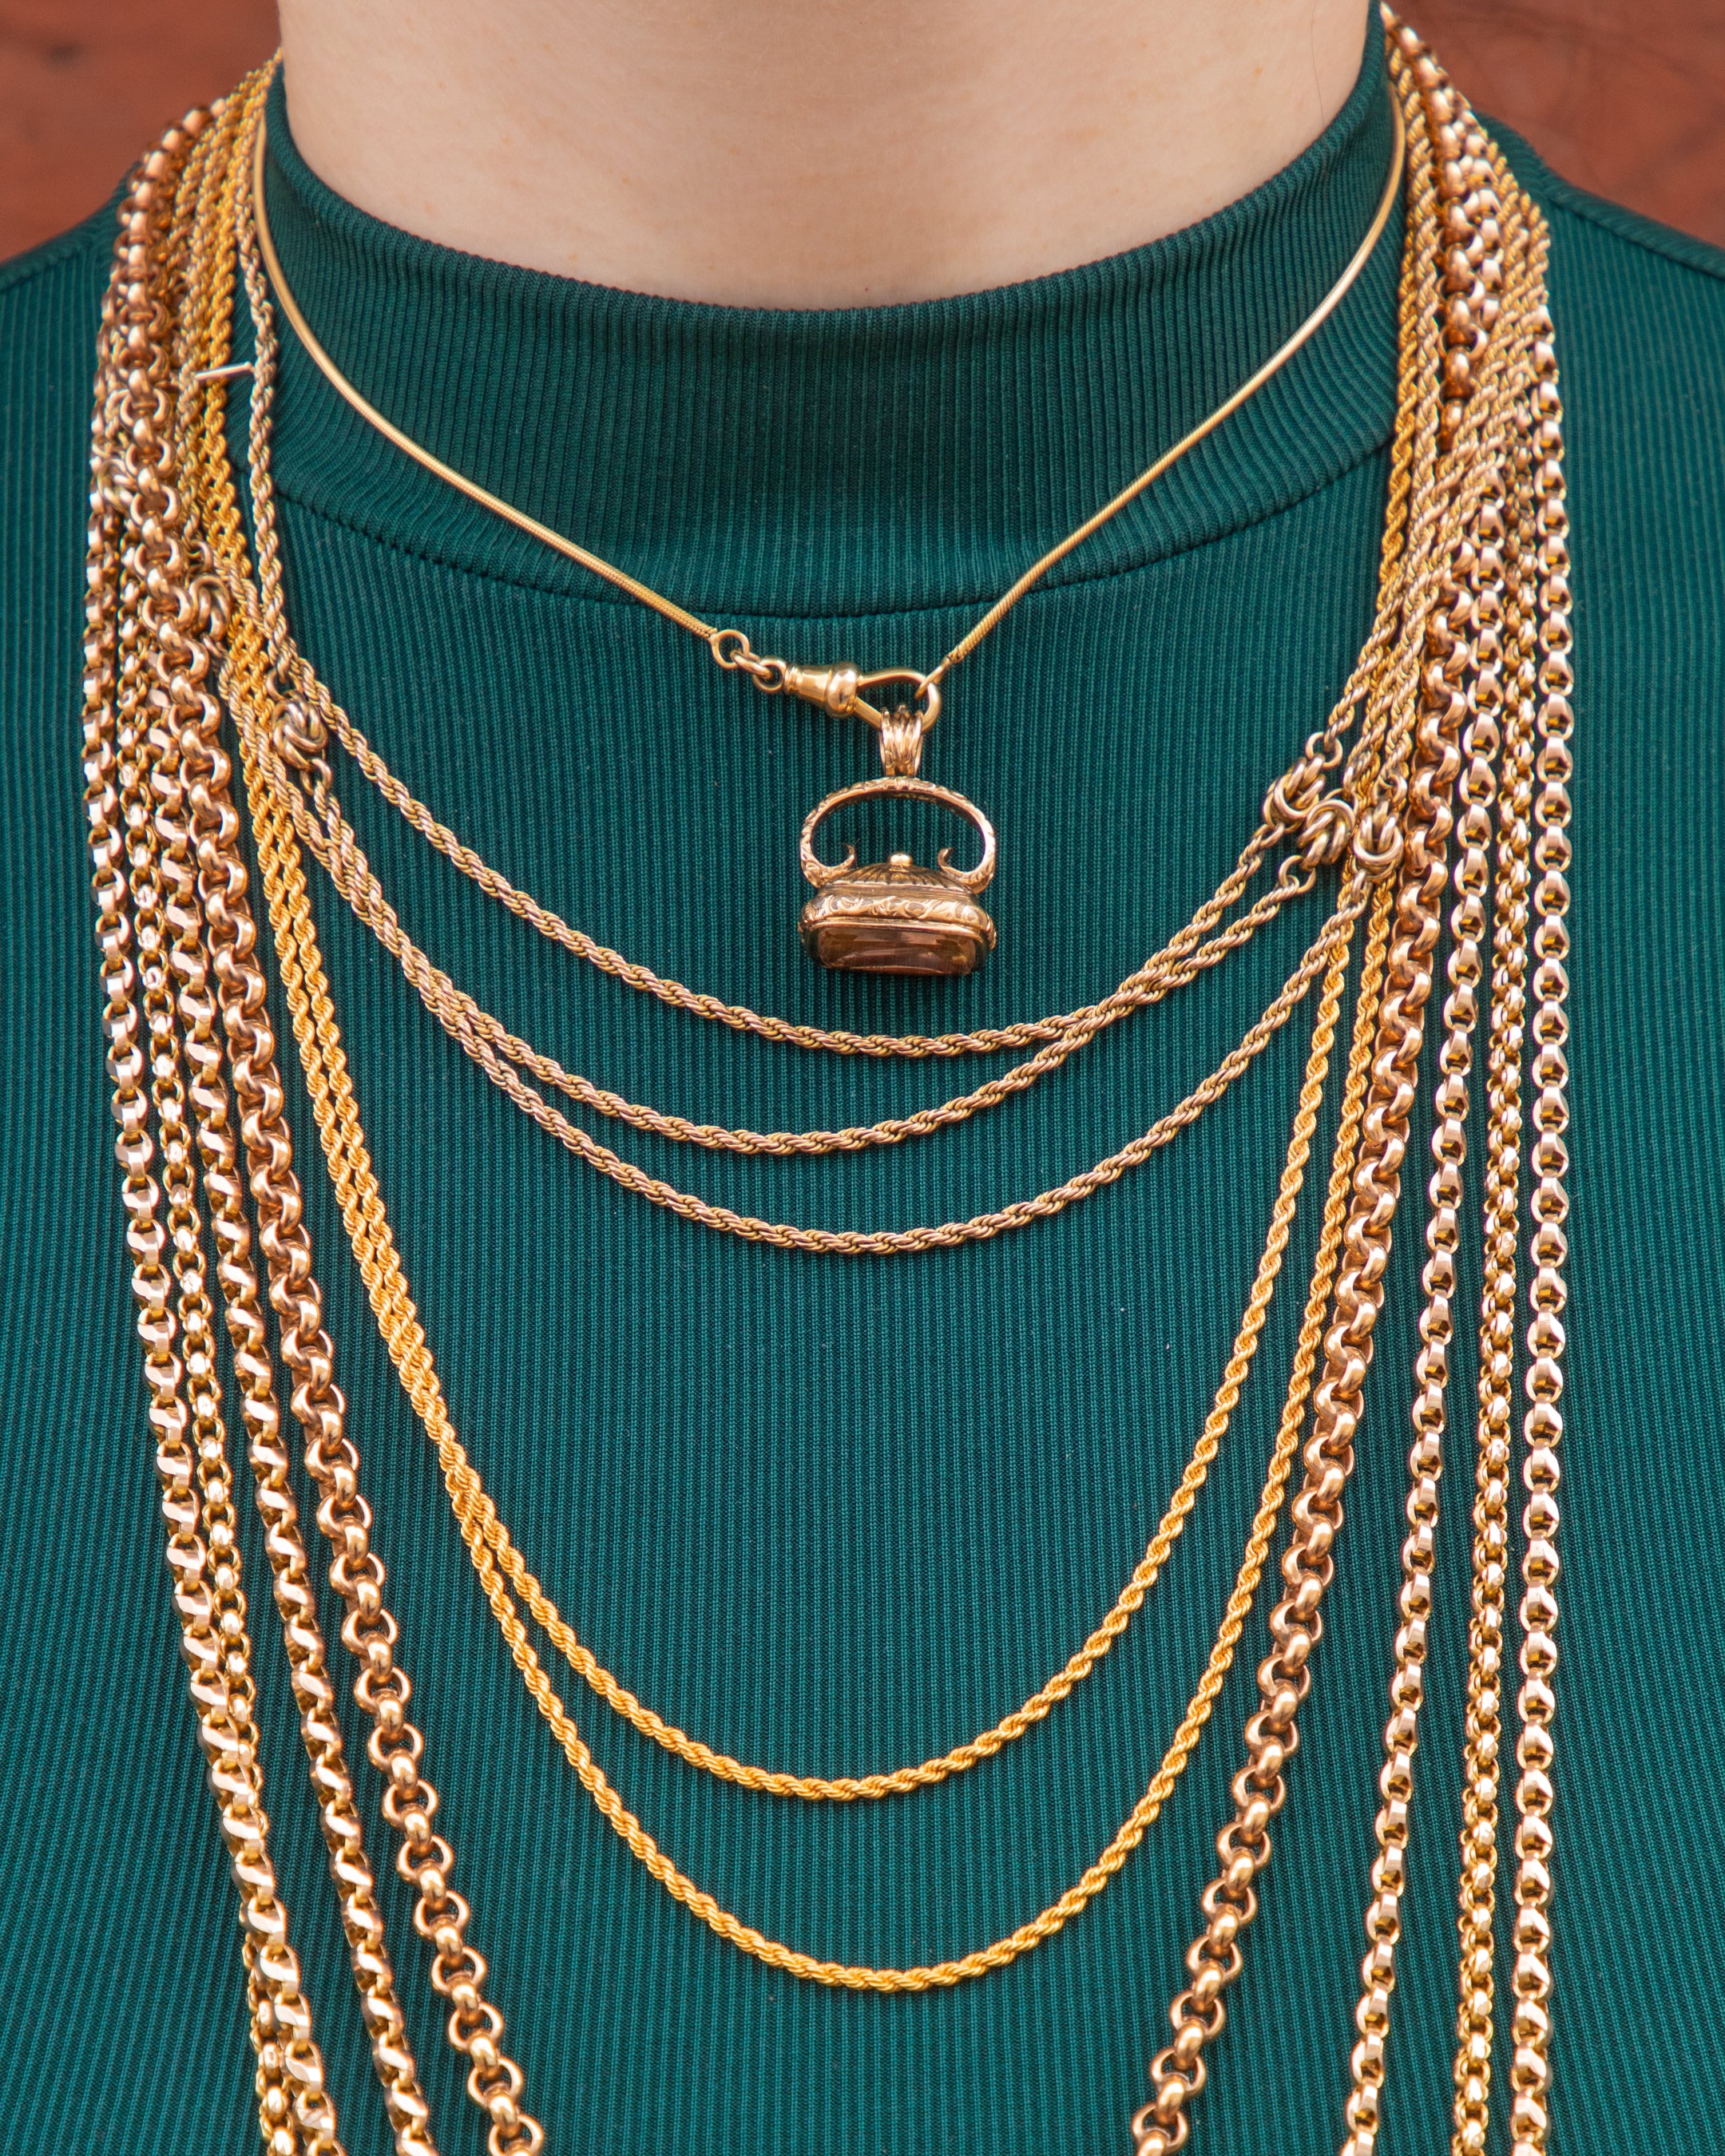 Antique Gold necklaces